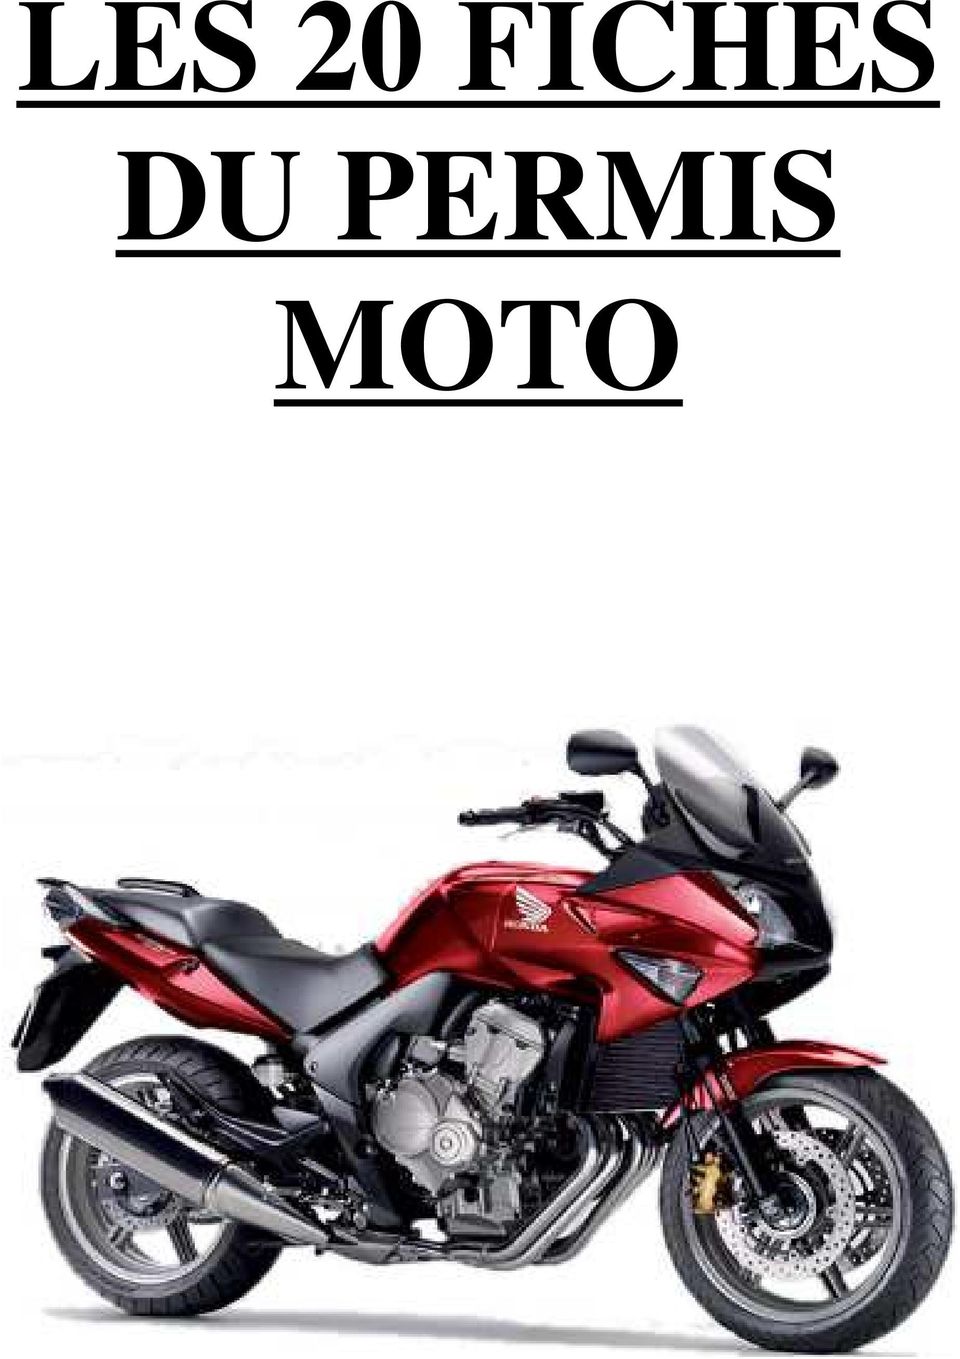 LES 20 FICHES DU PERMIS MOTO - PDF Téléchargement Gratuit